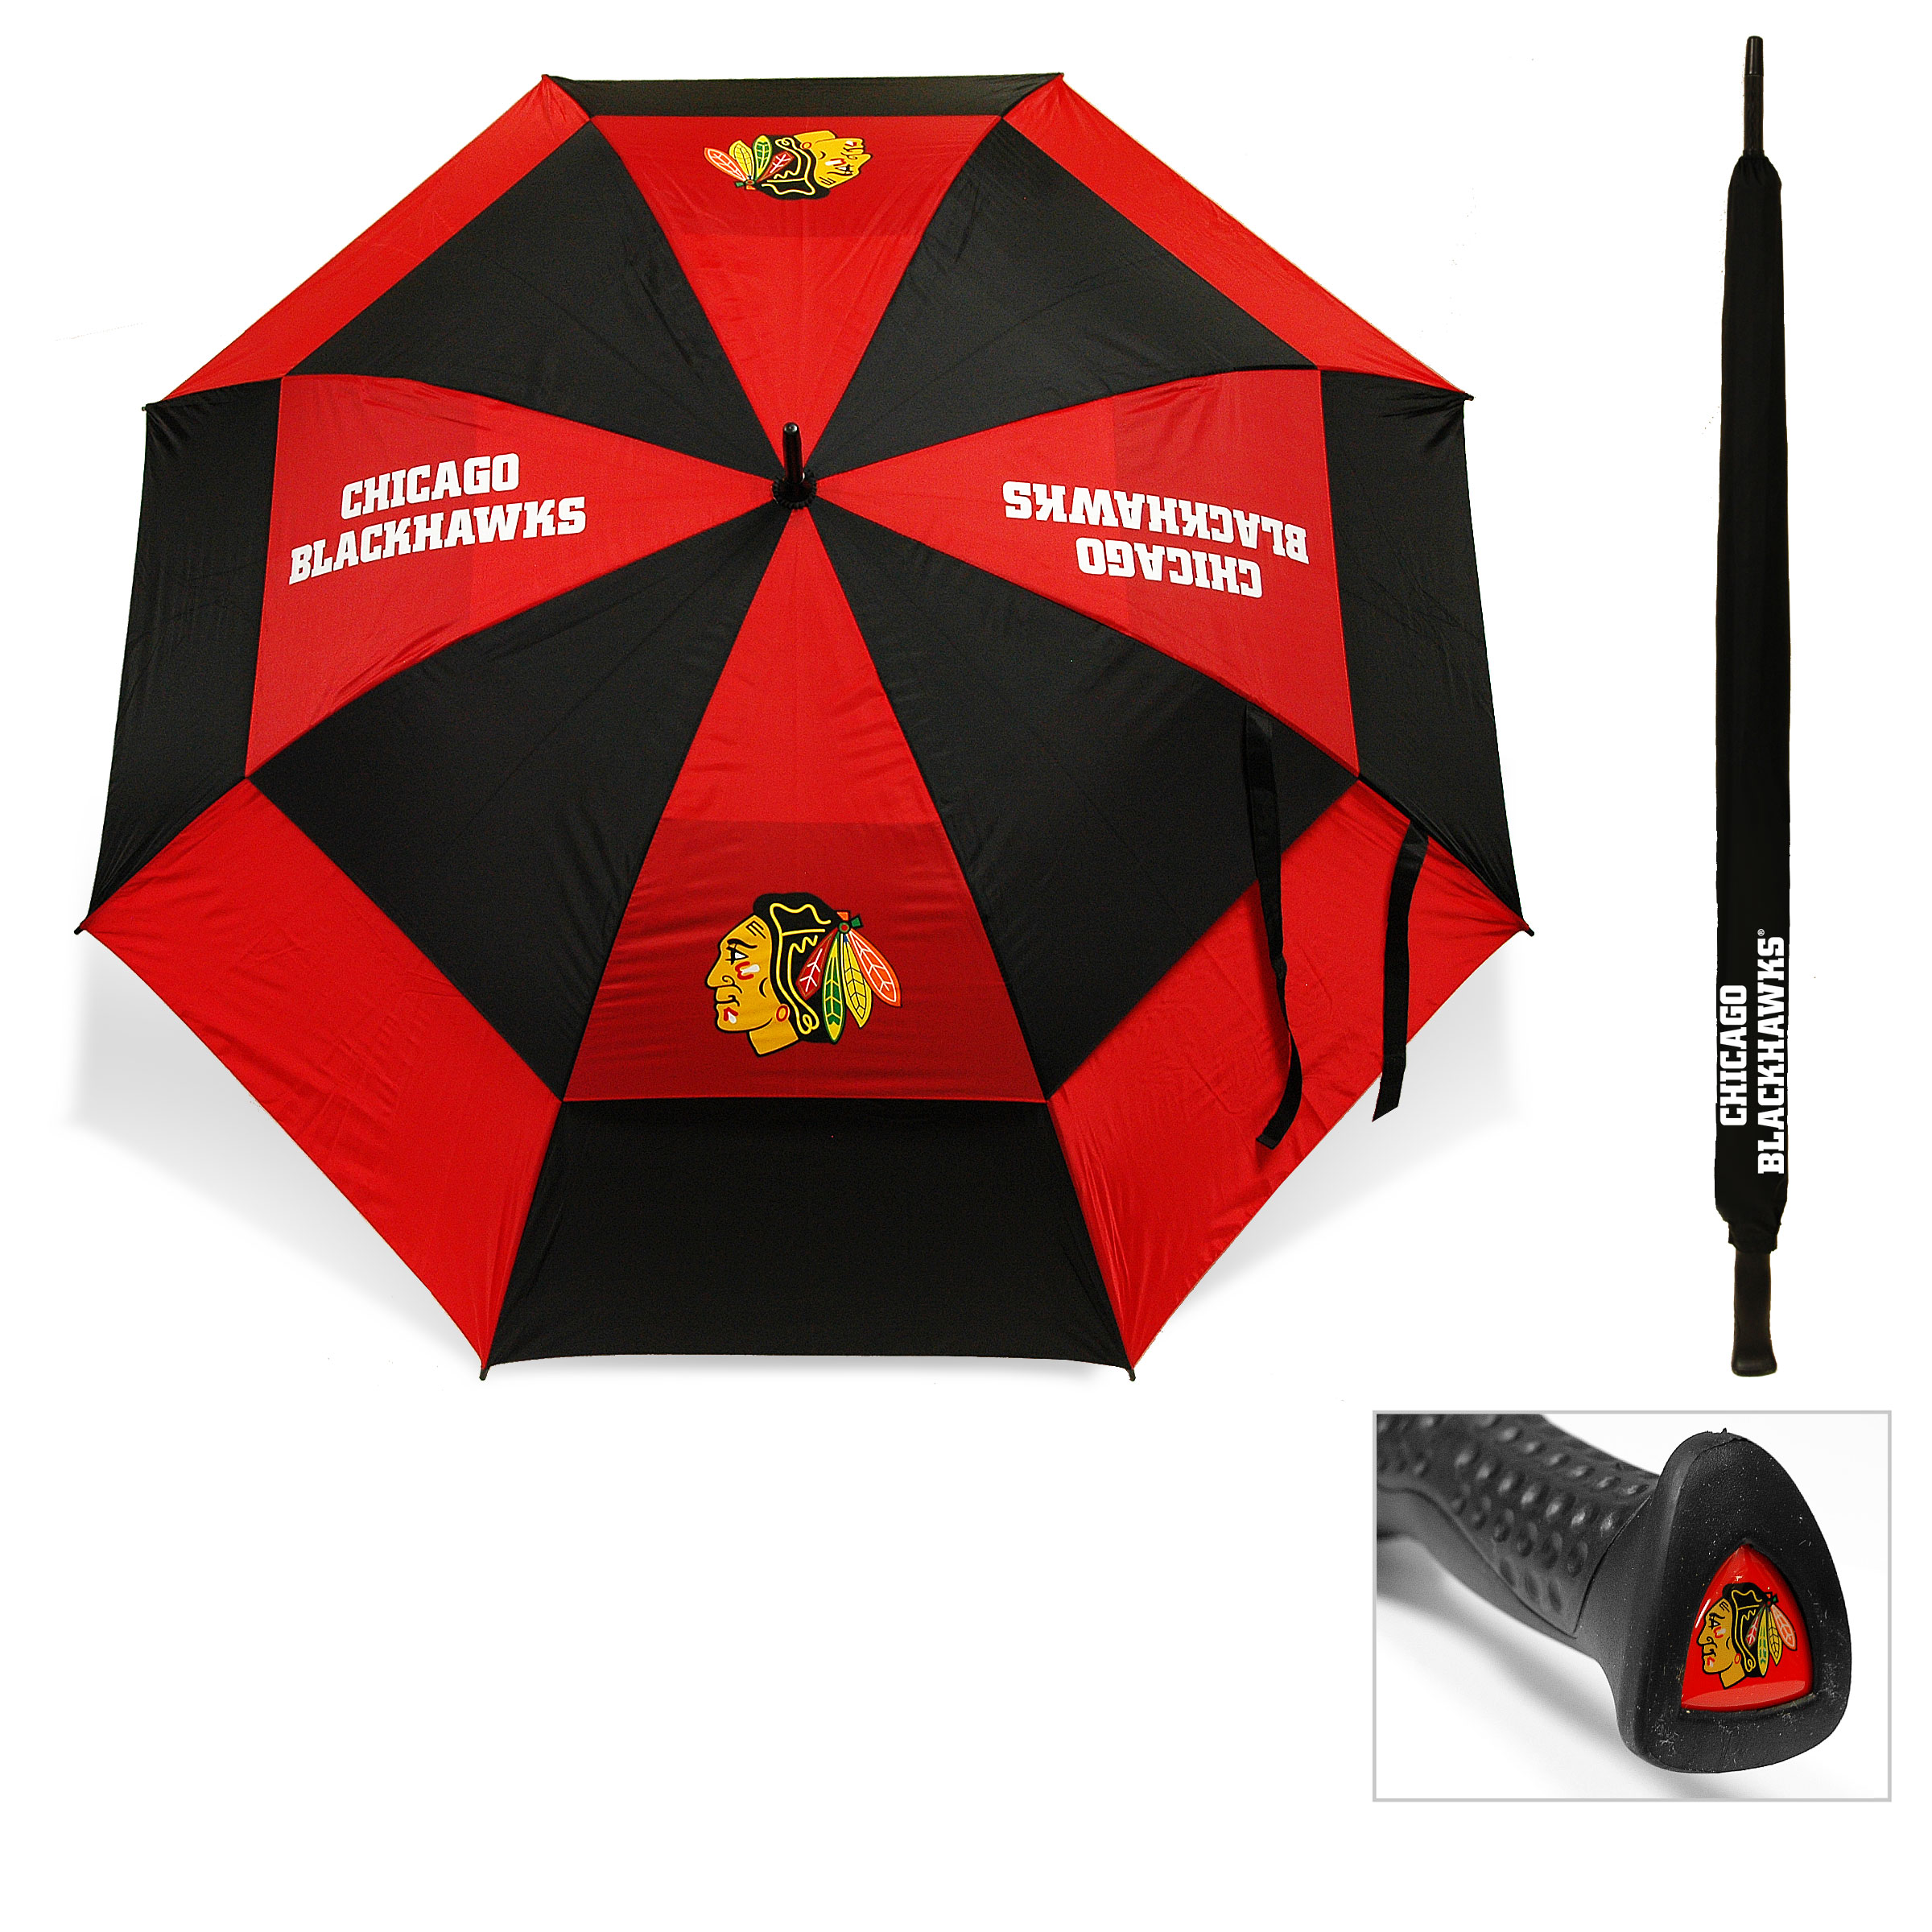 Chicago Blackhawks Umbrella